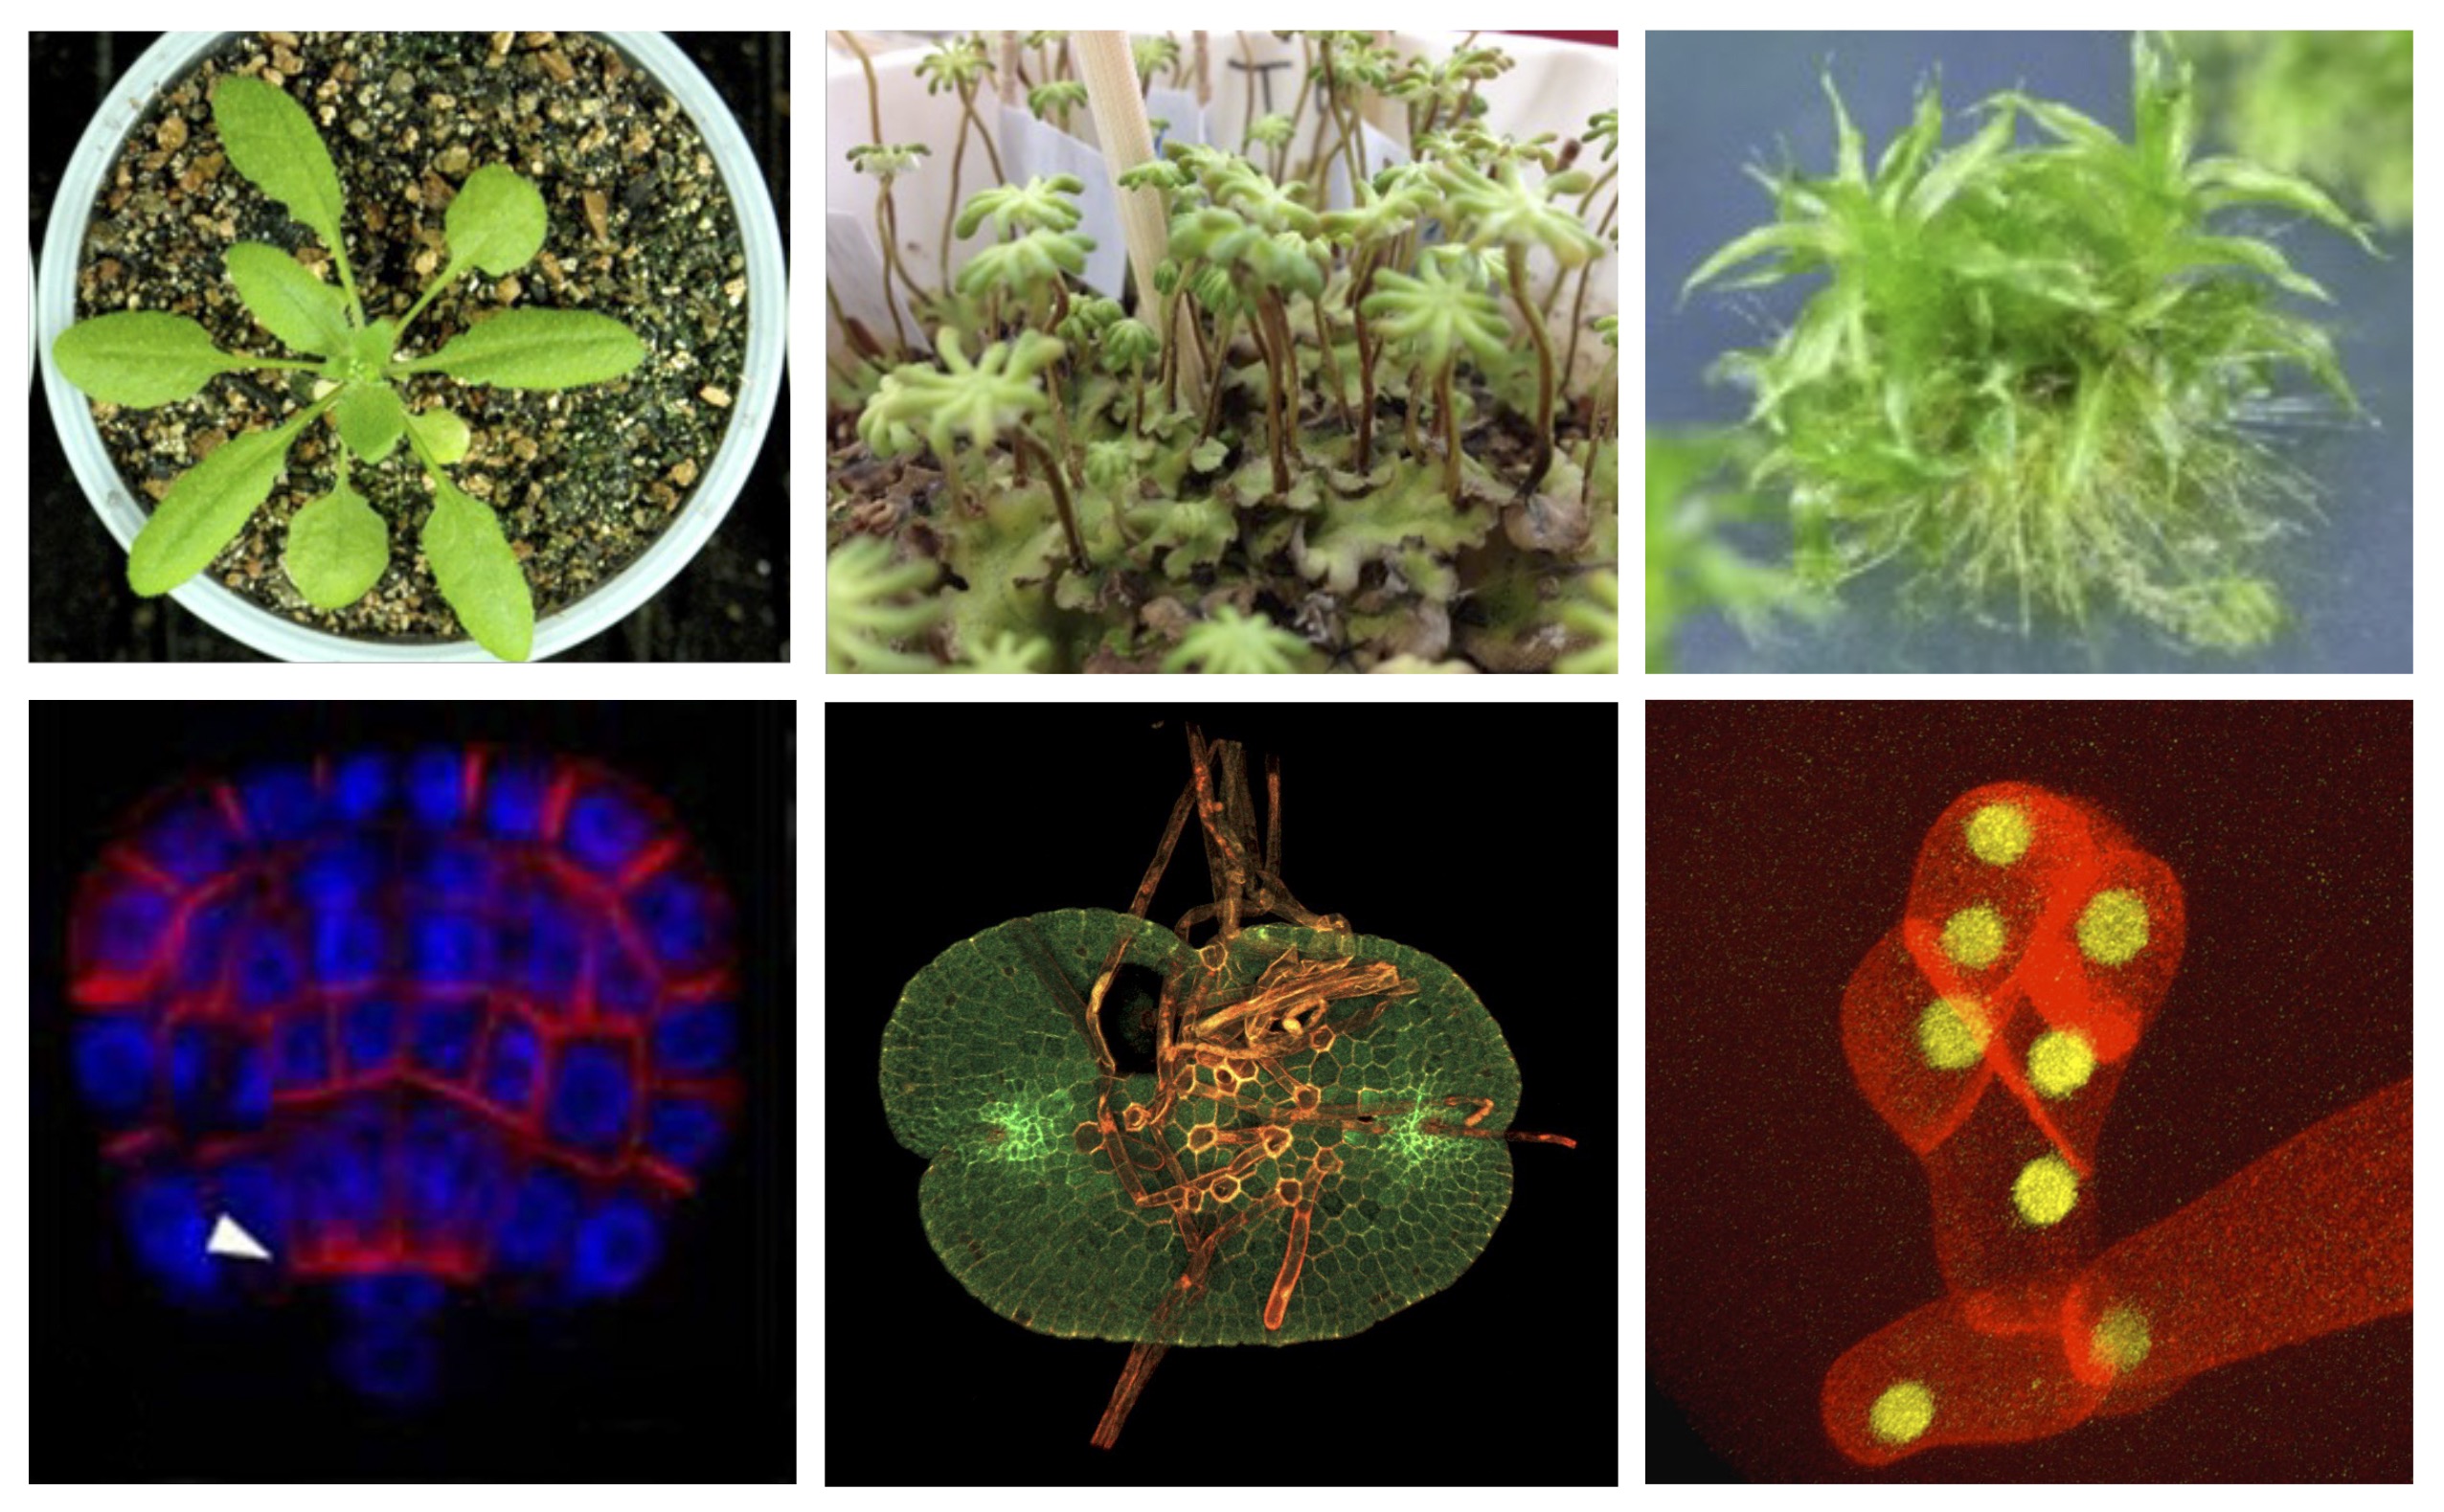 当研究室で扱っている植物の一例です。上段は植物の全体像で、左からシロイヌナズナ、ゼニゴケ、ヒメツリガネゴケです。下段は、左から胚発生、無性芽の発生、茎葉体の発生初期の共焦点レーザー顕微鏡画像です。オーキシンの輸送に関わるPINなどの、発生において必要なタンパク質の発生過程における局在部位を示しています。日々、植物の発生メカニズムについて共焦点レーザー顕微鏡を用いたりして研究を行っています。